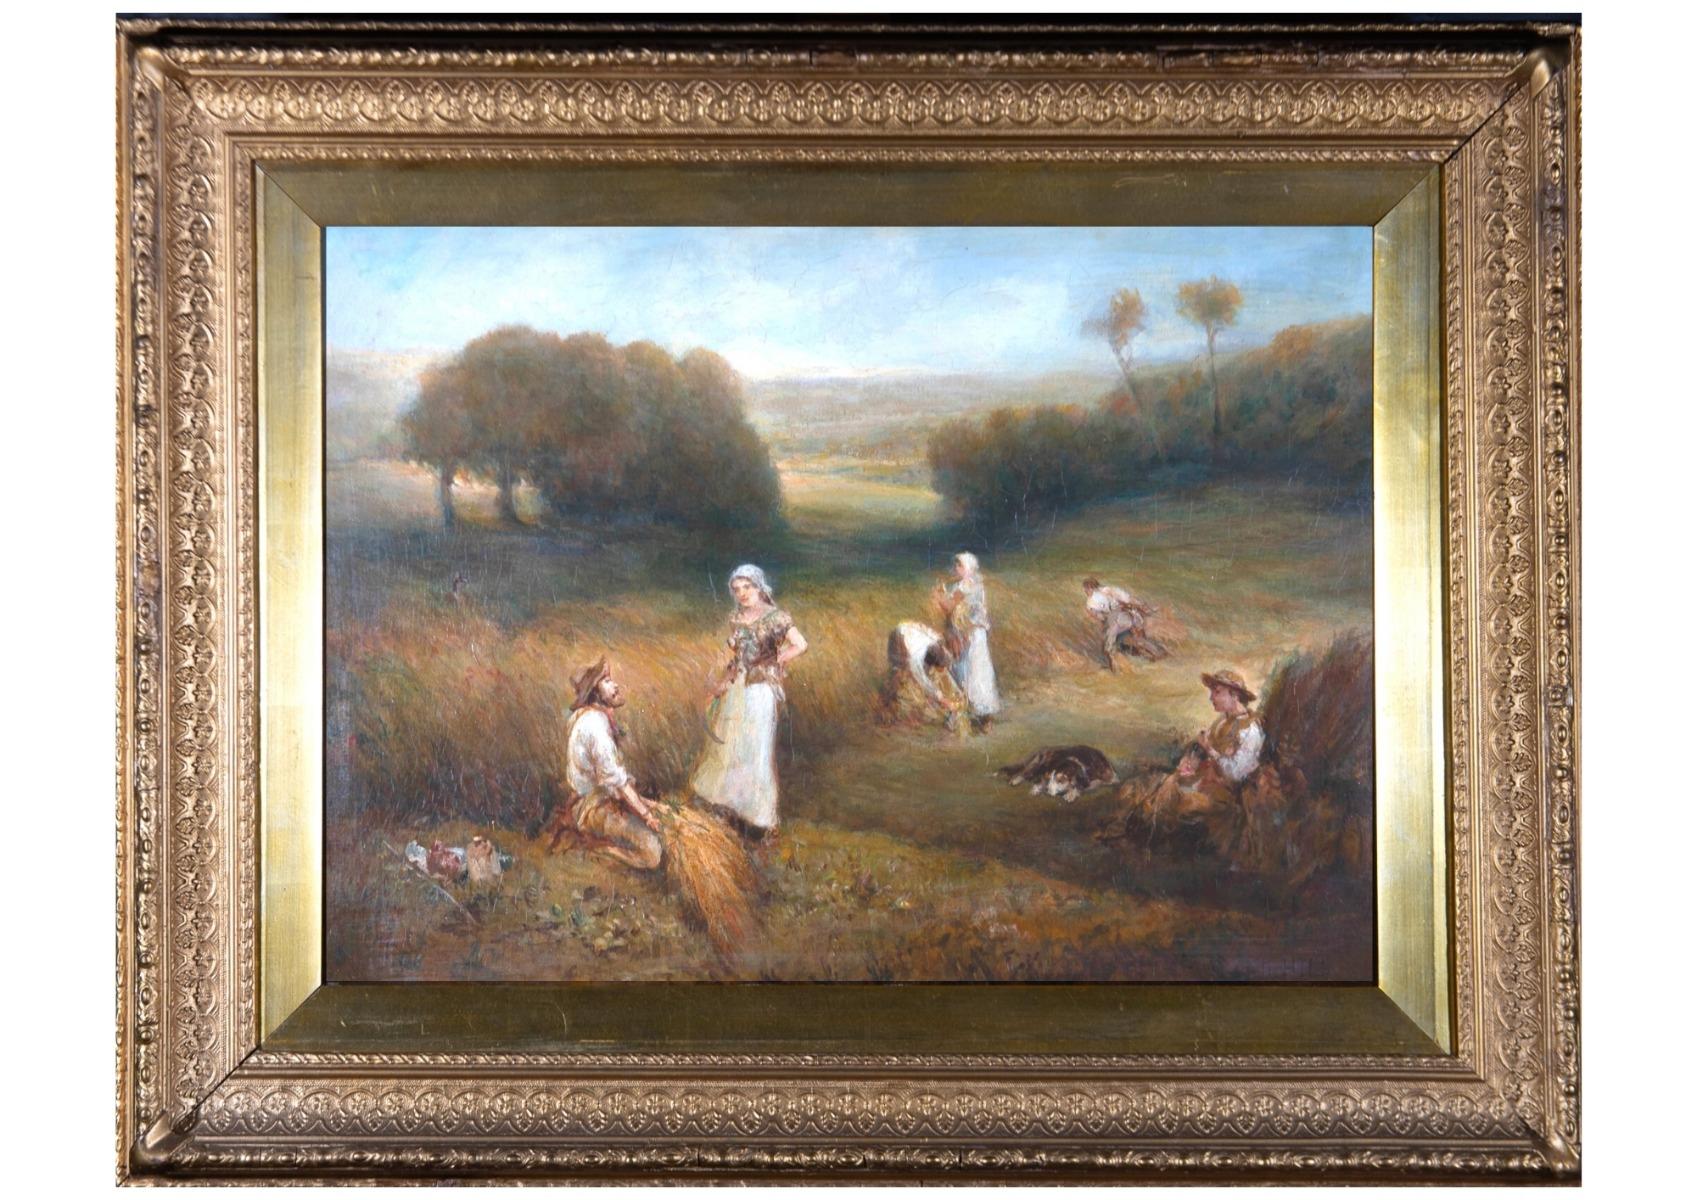 Eine schöne viktorianische Öl-Landschaft, die einen späten Sommernachmittag auf einem Heu-Feld darstellt. Eine Gruppe von Figuren arbeitet an der Ernte des Heus in Stöcken. Rechts im Schatten ruht eine Frau mit einem Hund, und ein Mann und eine Frau